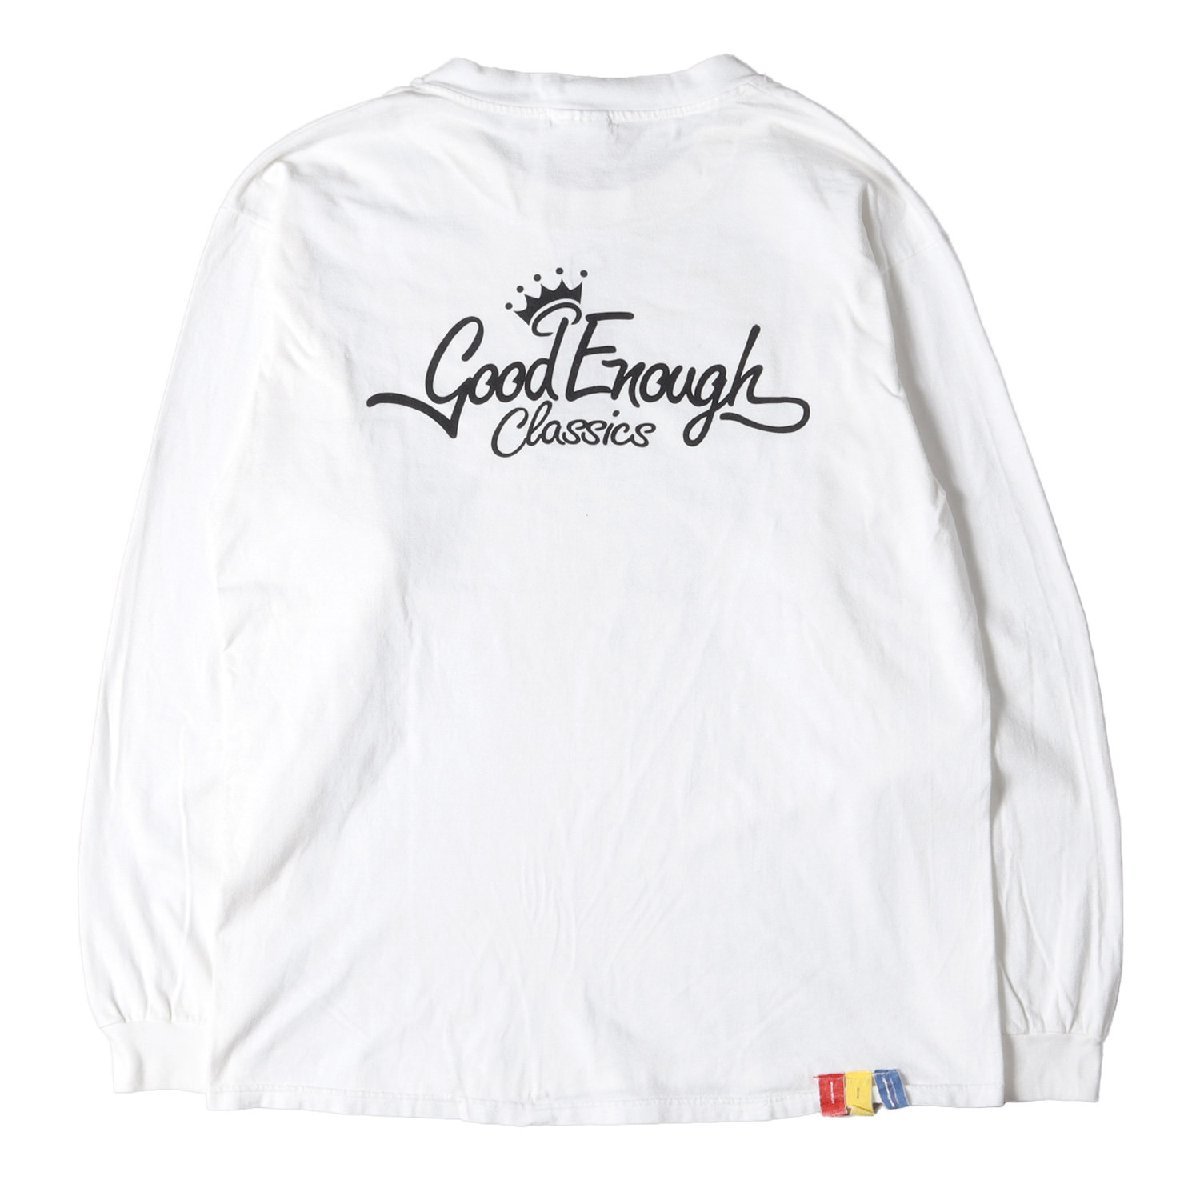 新しいスタイル ロングスリーブ クルーネック クラシックロゴ 90s サイズ:L Tシャツ グッドイナフ ENOUGH GOOD Tシャツ ホワイト Hanes 1998年モデル 長袖Tシャツ